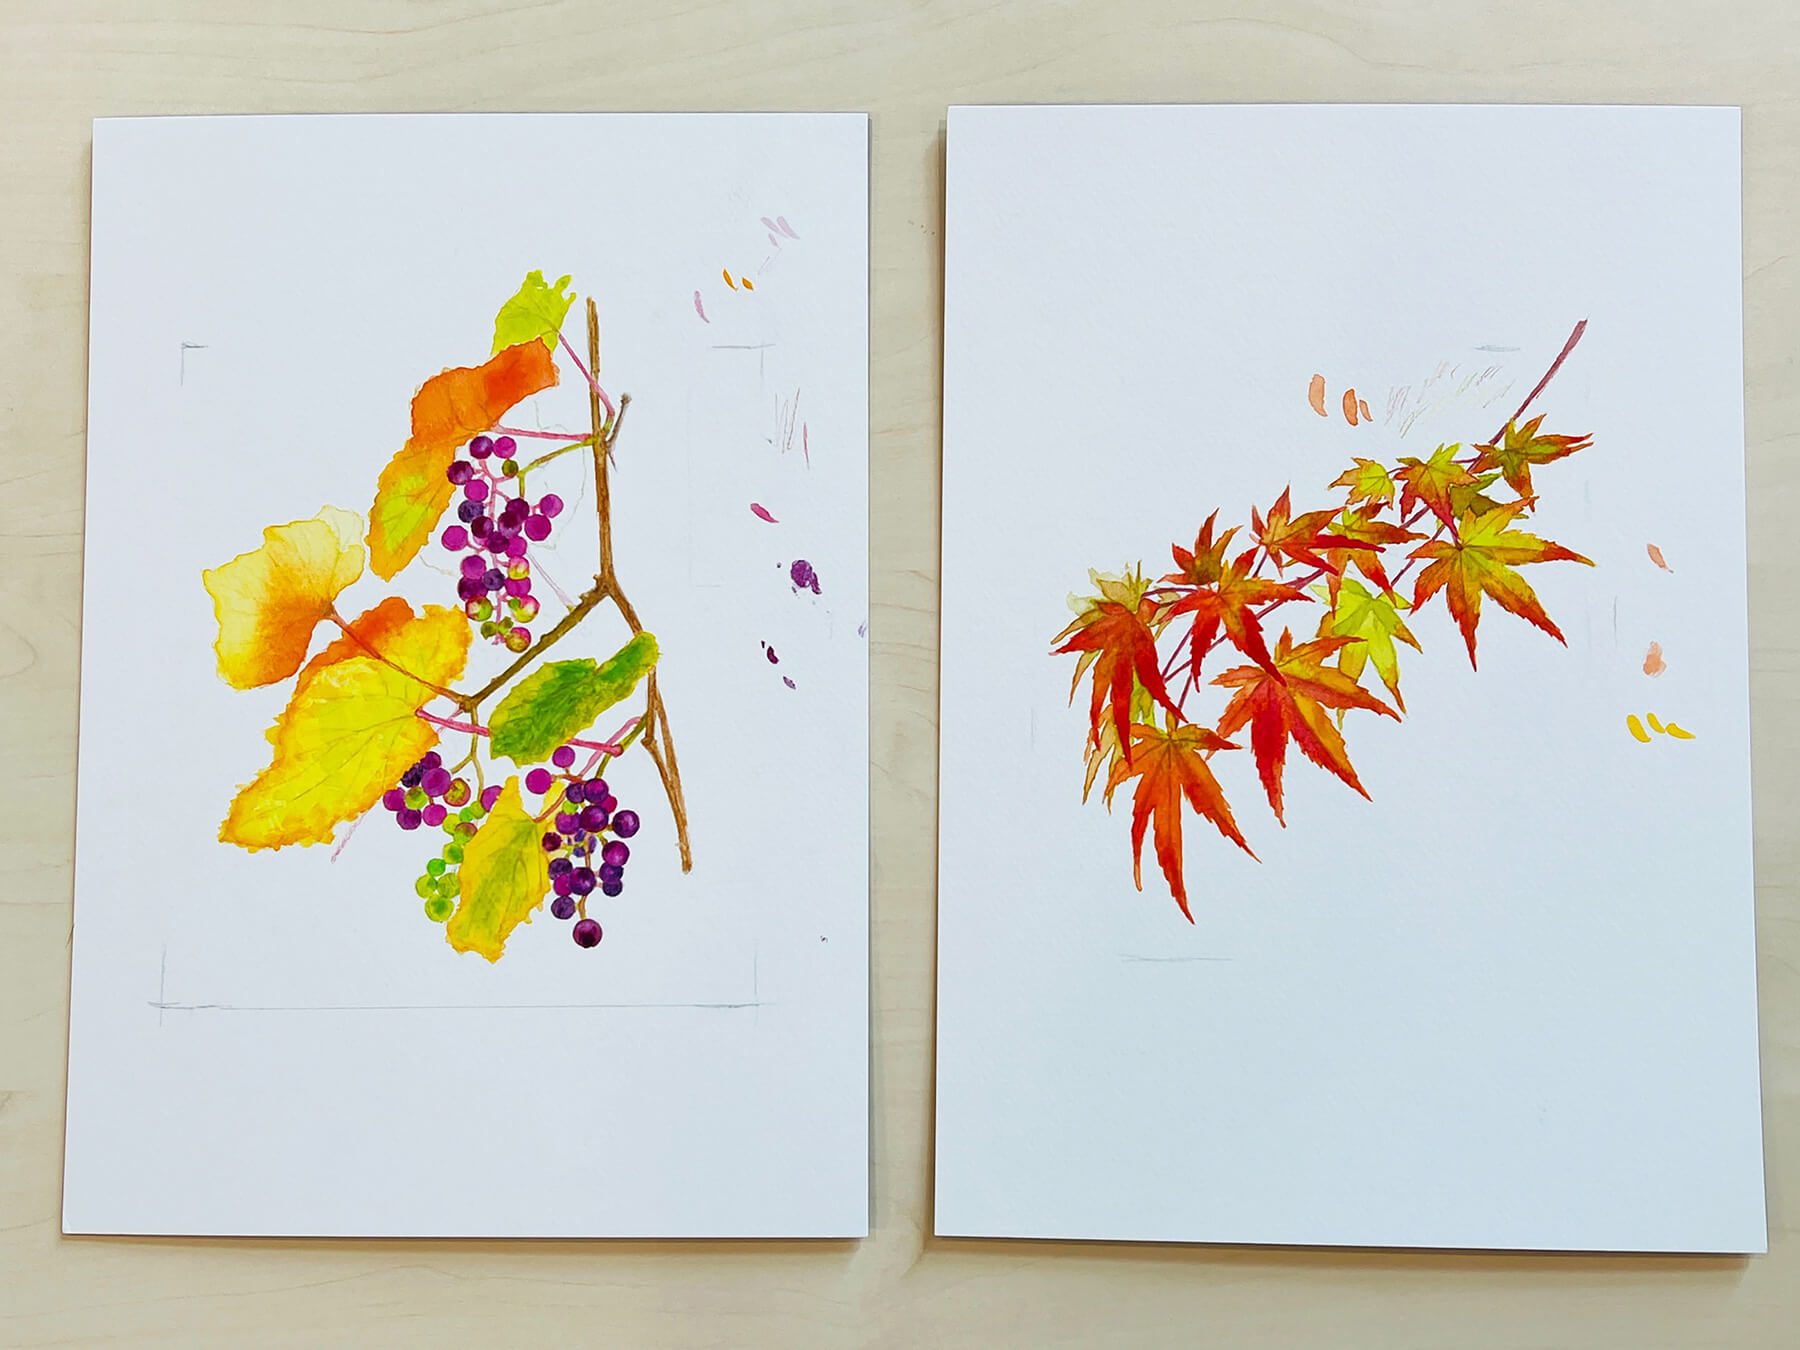 山田さんが描いた秋の植物。この絵をスキャンしてパソコンに取り込み、切手に仕上げた